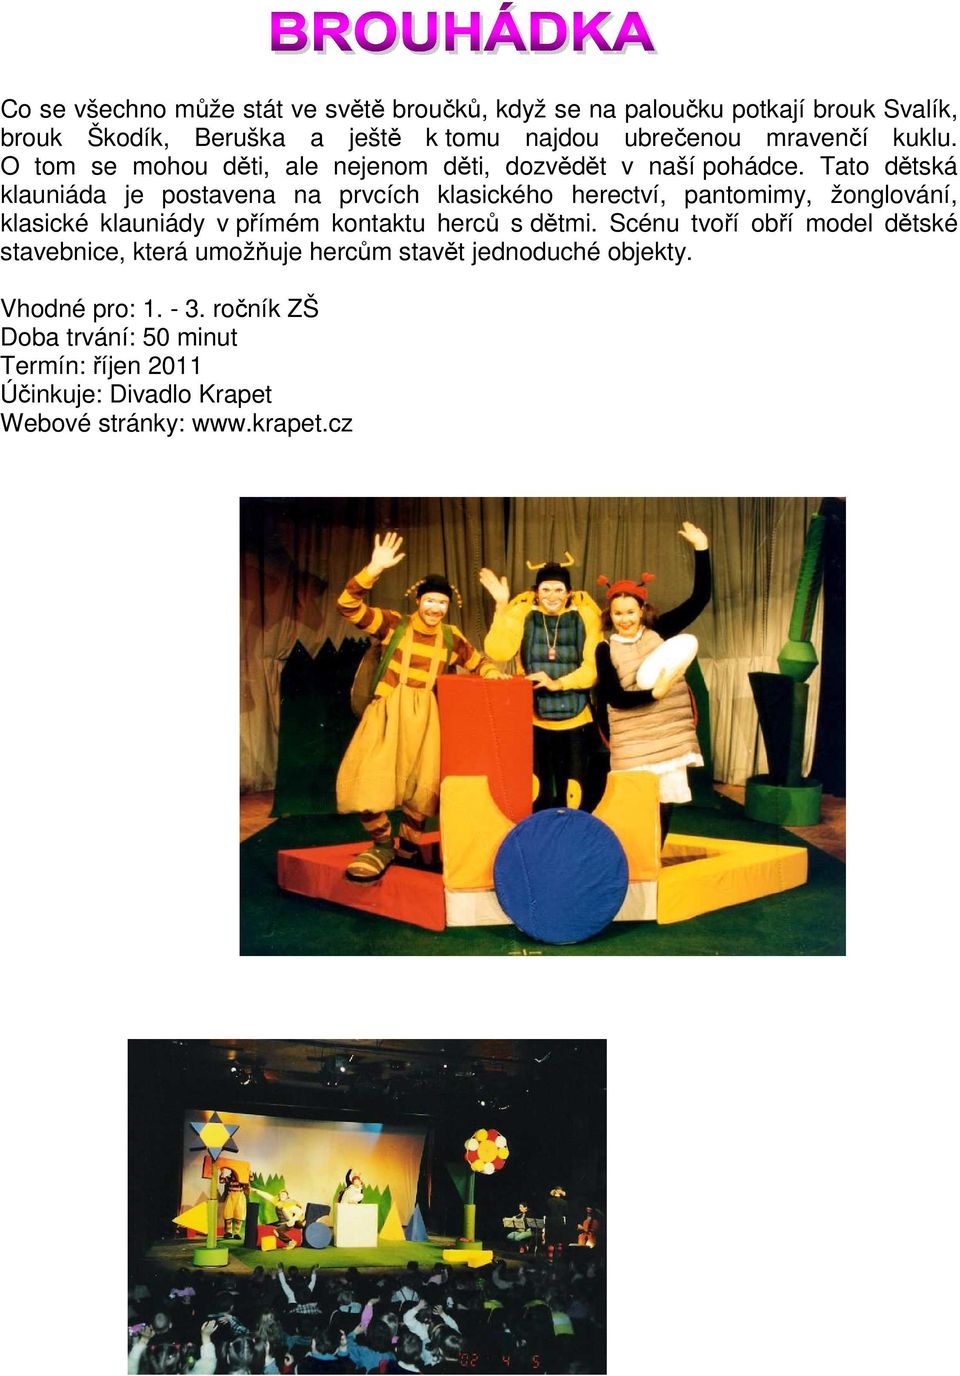 Tato dětská klauniáda je postavena na prvcích klasického herectví, pantomimy, žonglování, klasické klauniády v přímém kontaktu herců s